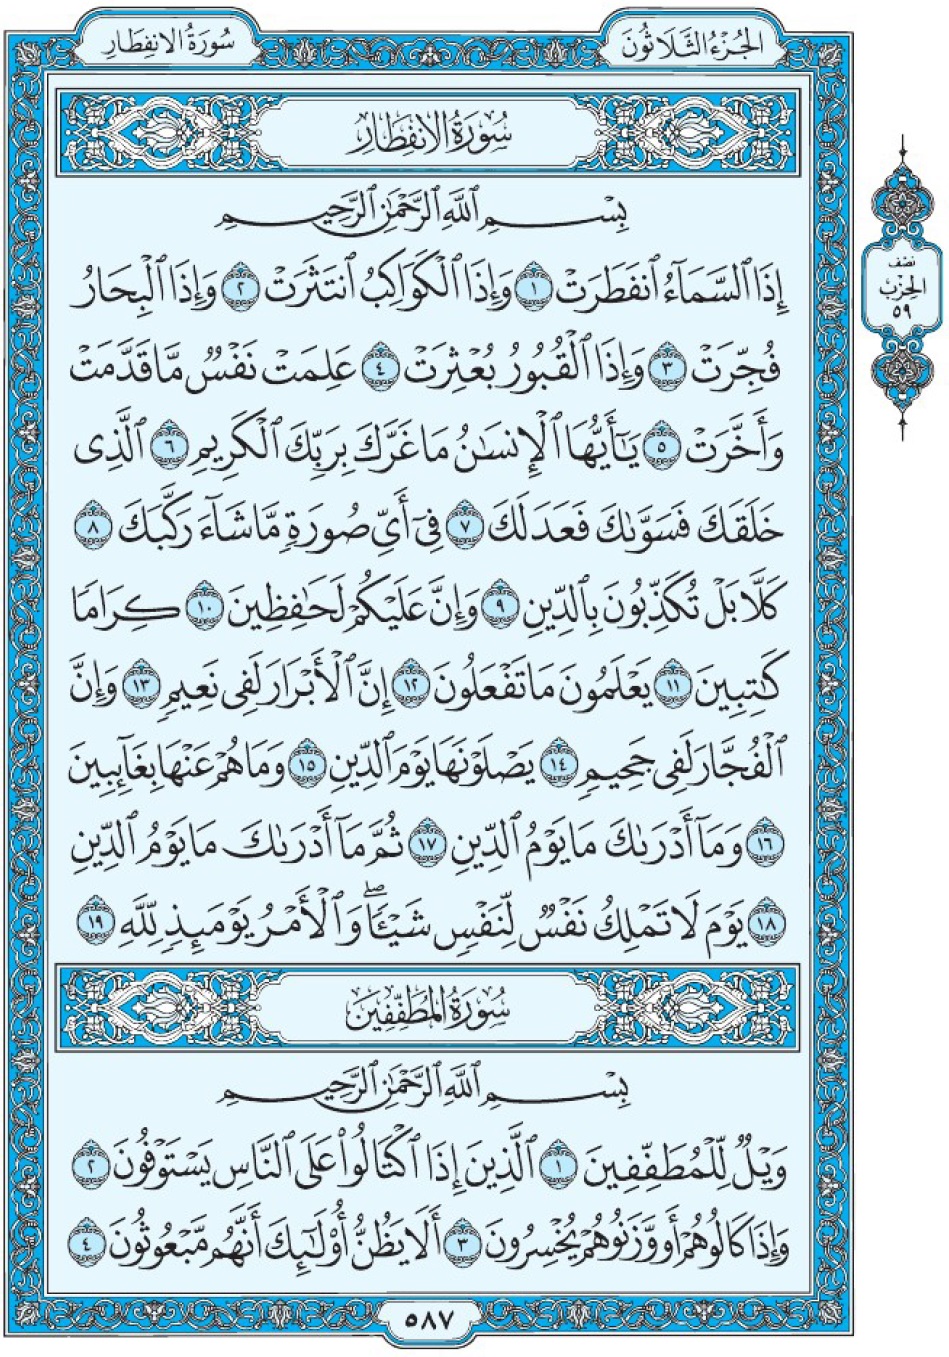 Коран Мединский мусхаф страница 587 сура 82 аль-Инфитар 83 аль-Мутаффифин, سورة الإنفطار المطففين 